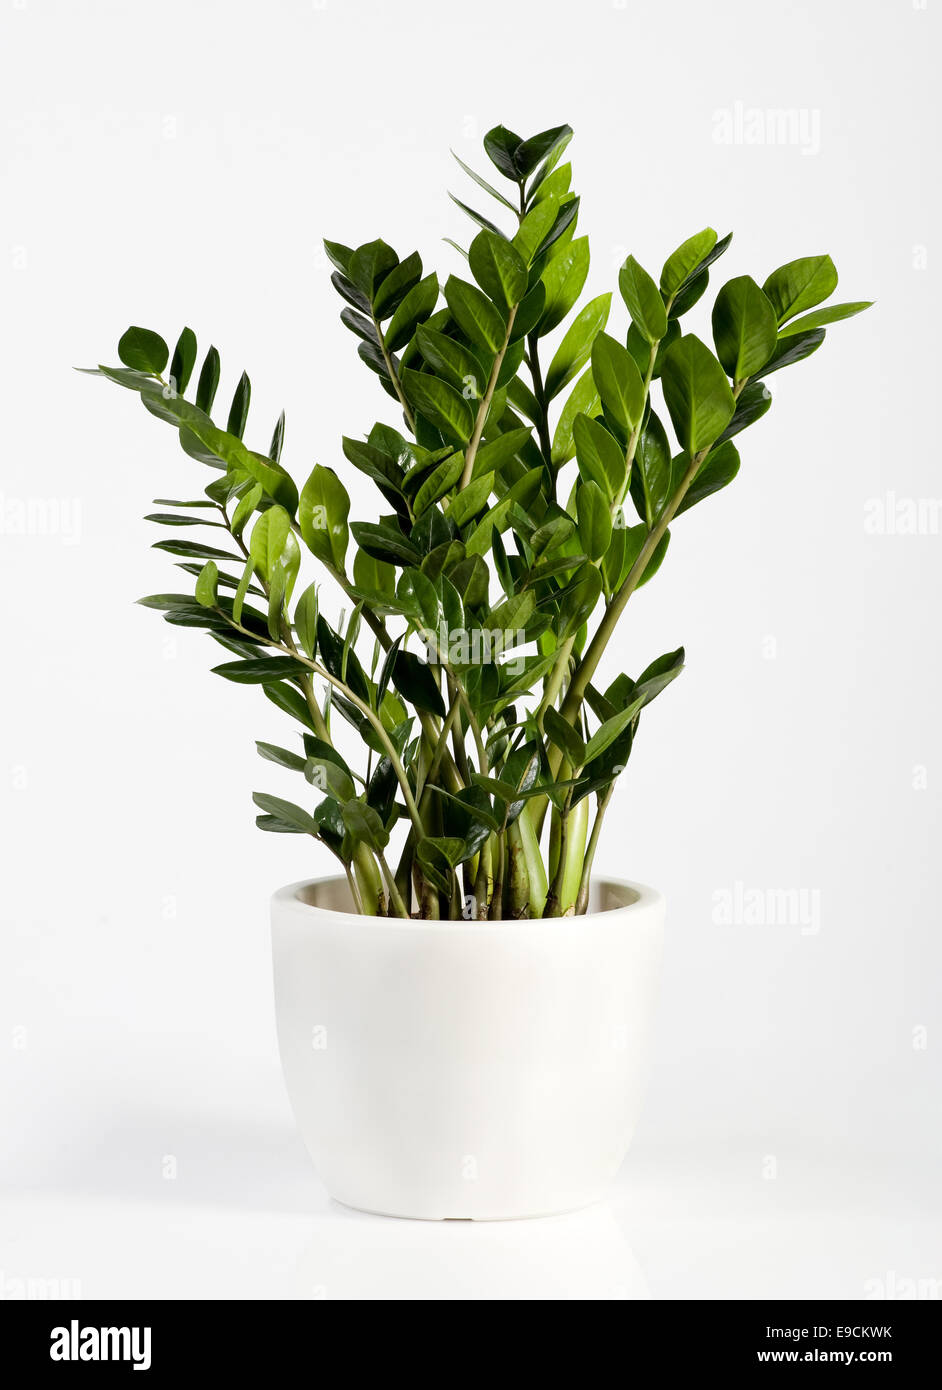 Coltivate houseplant Zamioculcas in un semplice vaso di fiori bianchi, una pianta sempreverde che produce piccoli spadix di colore giallo brillante fiori Foto Stock